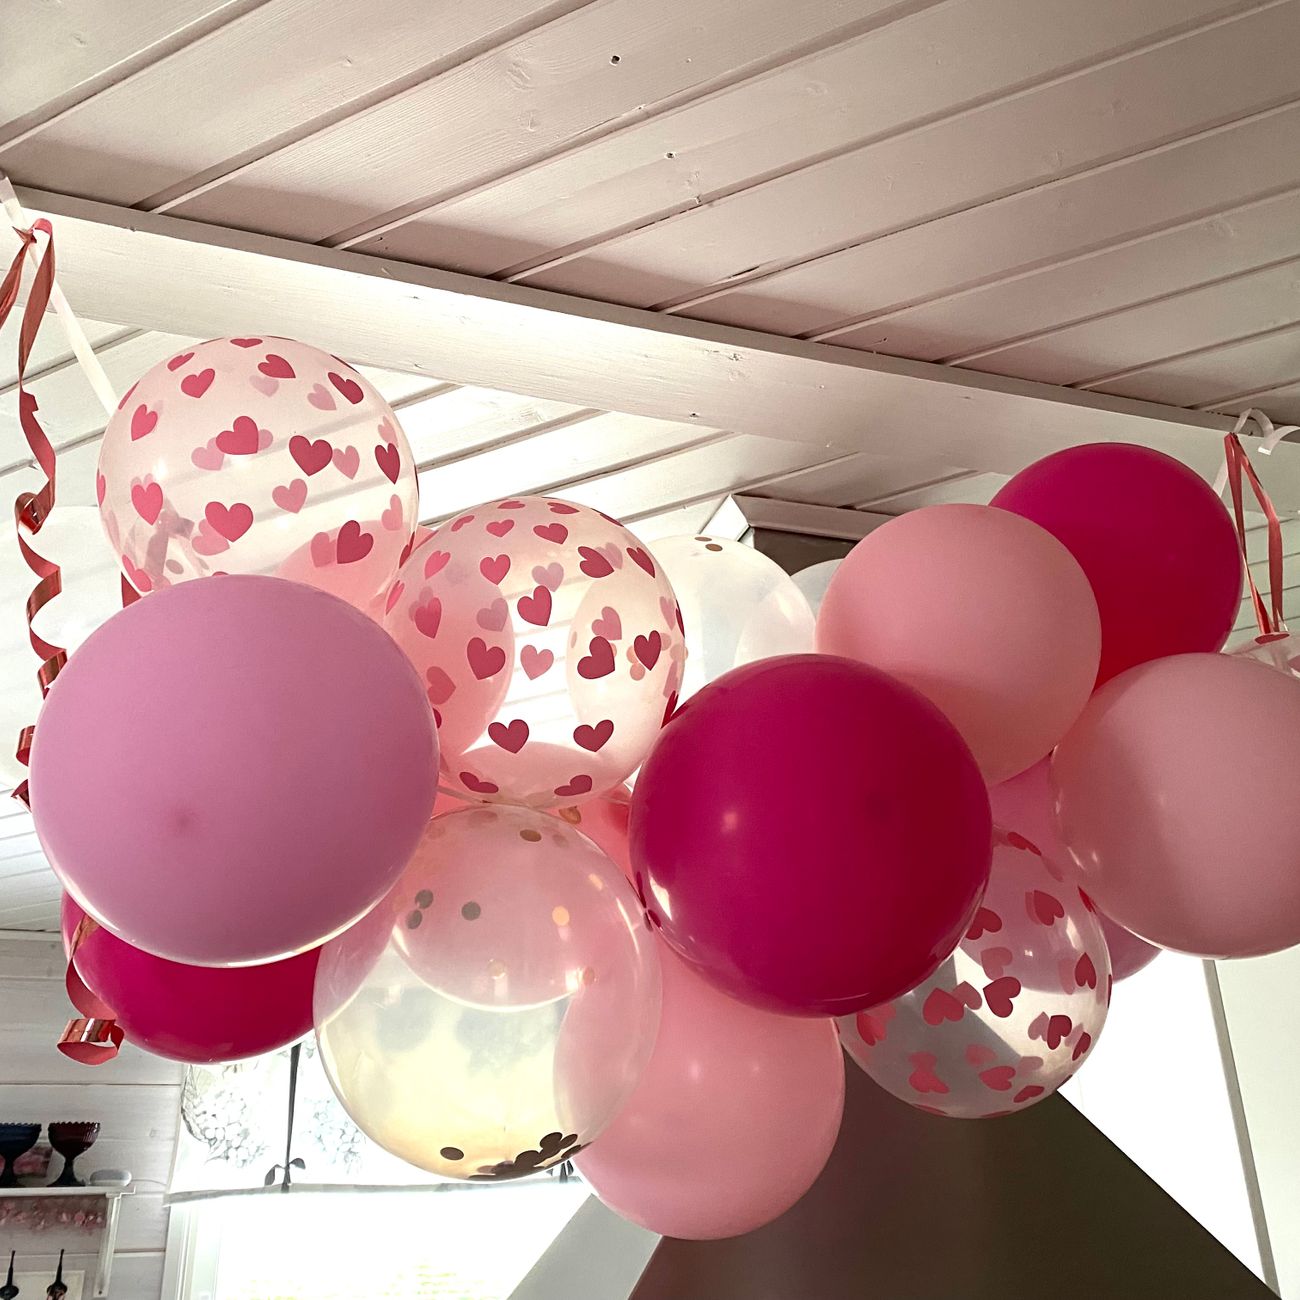 kb-ballonger-pastell-rosa-44713-6